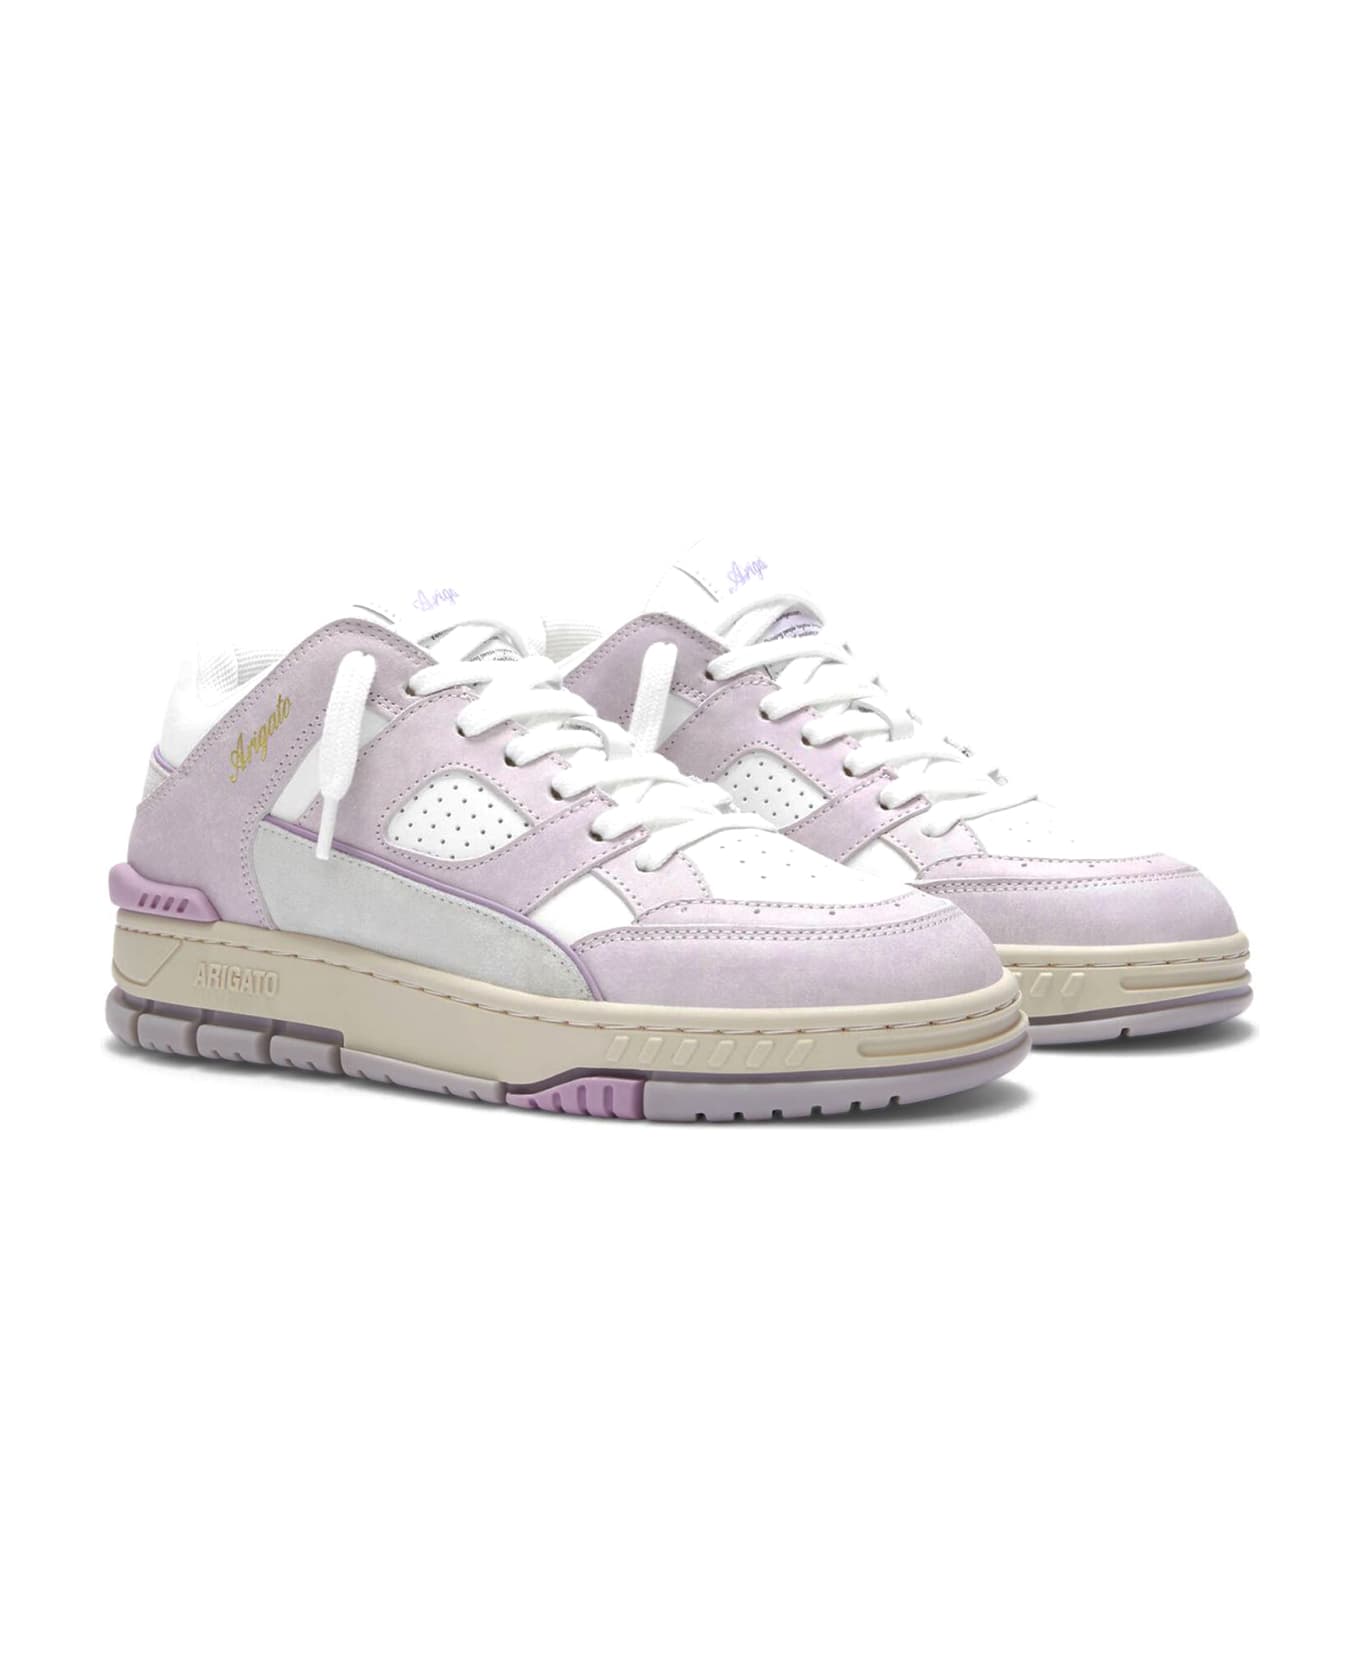 Axel Arigato White And Lilac Area Lo Sneaker - White